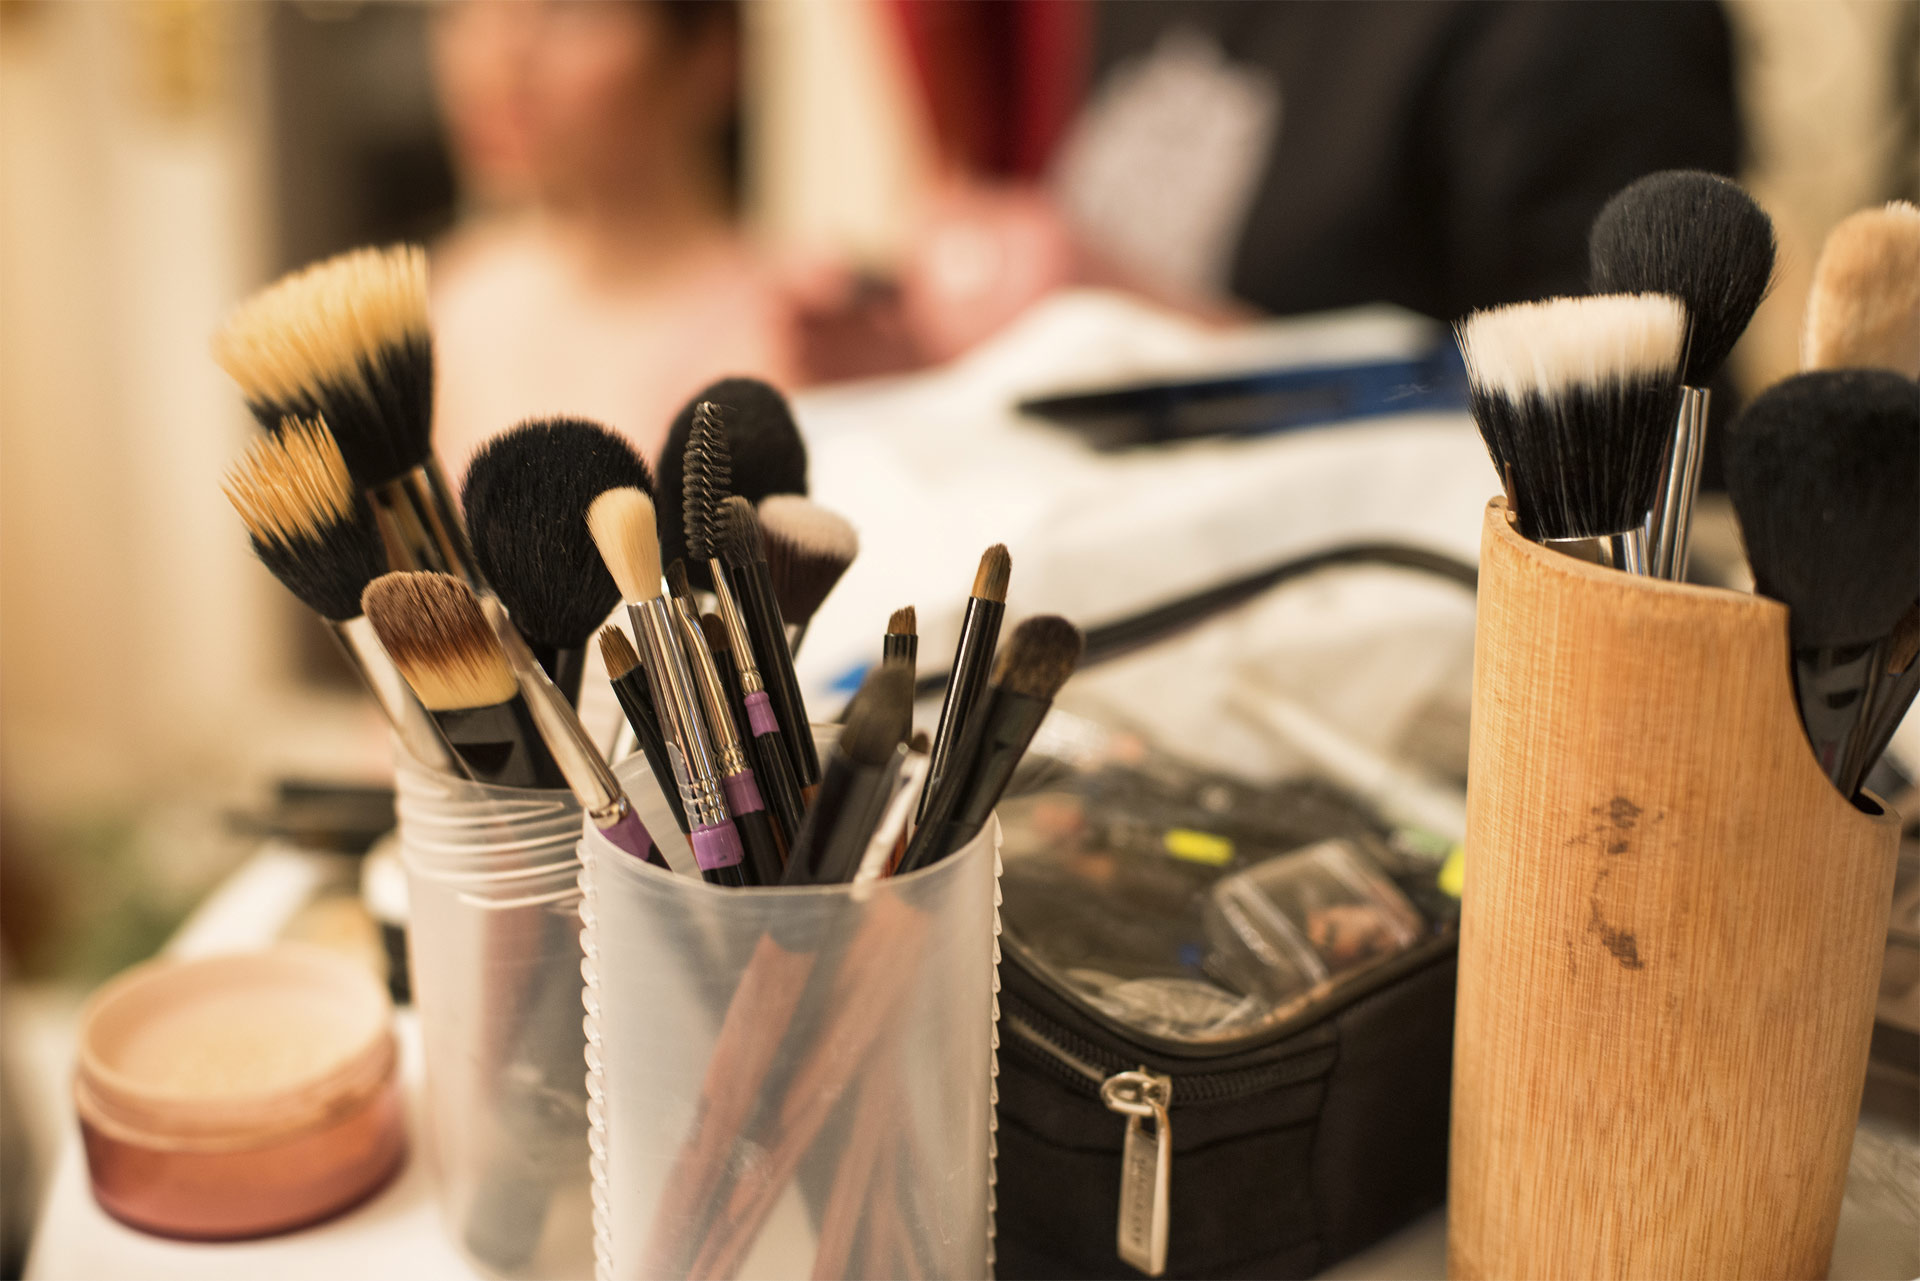 La calidad de las herramientas de aplicación de maquillaje determinan el nivel de acabado. Por eso es necesario escoger las mejores